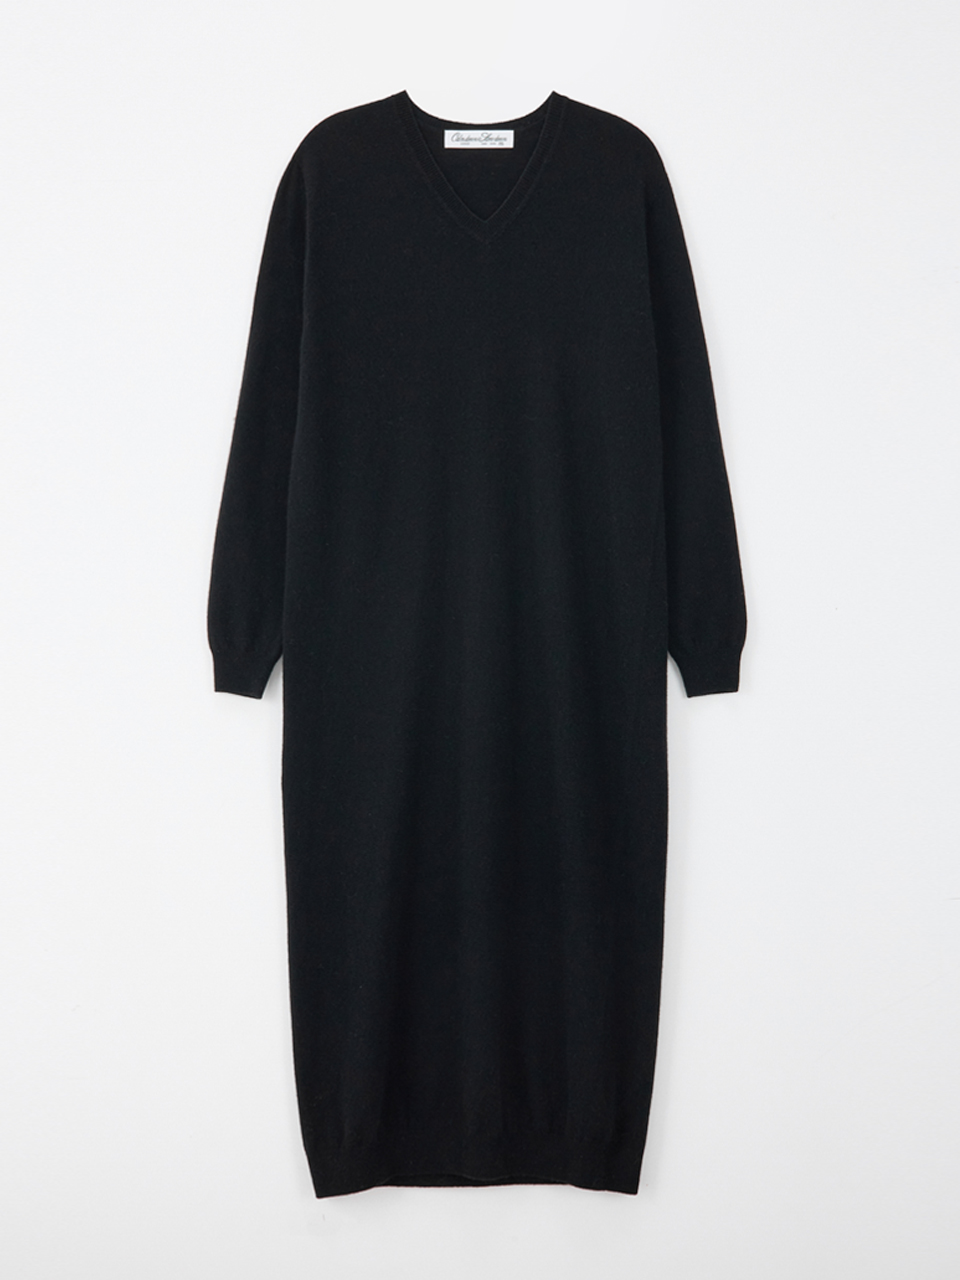 Wool cashmere v-neck dress_black